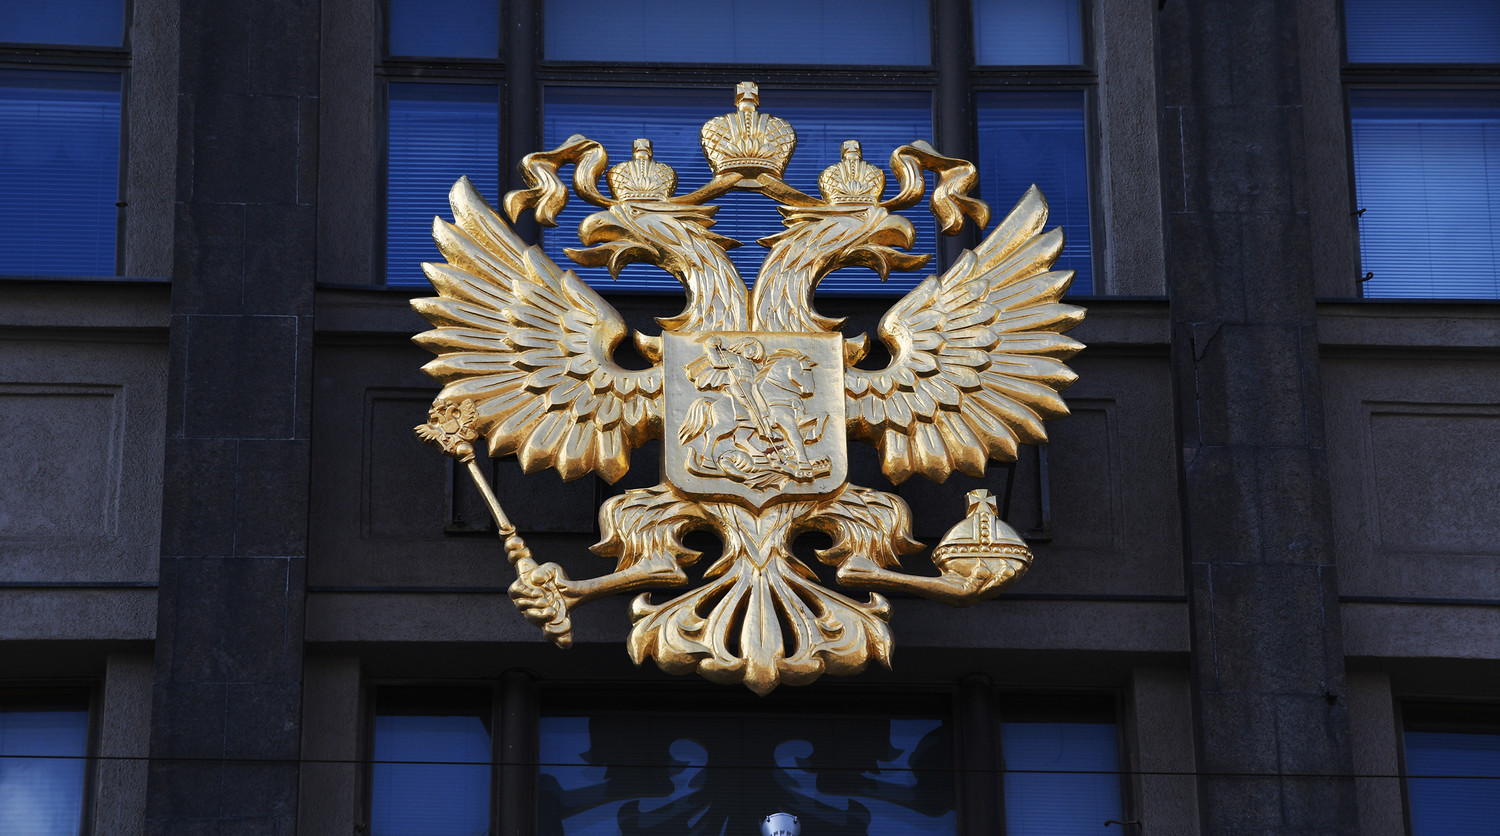 Герб на здании Государственной Думы Российской Федерации на улице Охотный ряд в Москве